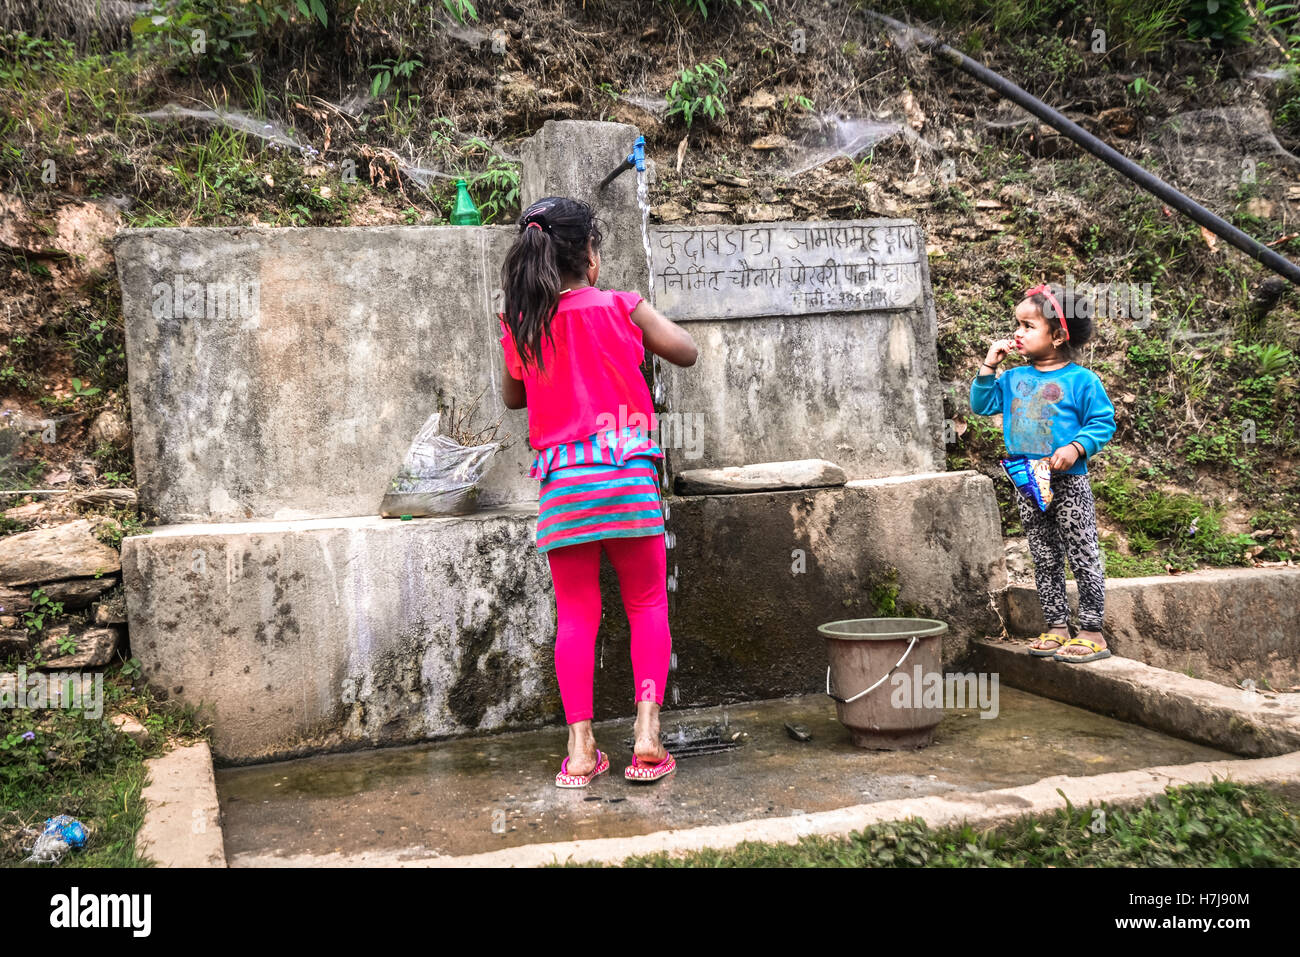 Kinder bei einer kommunalen Wasseraufnahme im ländlichen Panchase, Nepal. Stockfoto